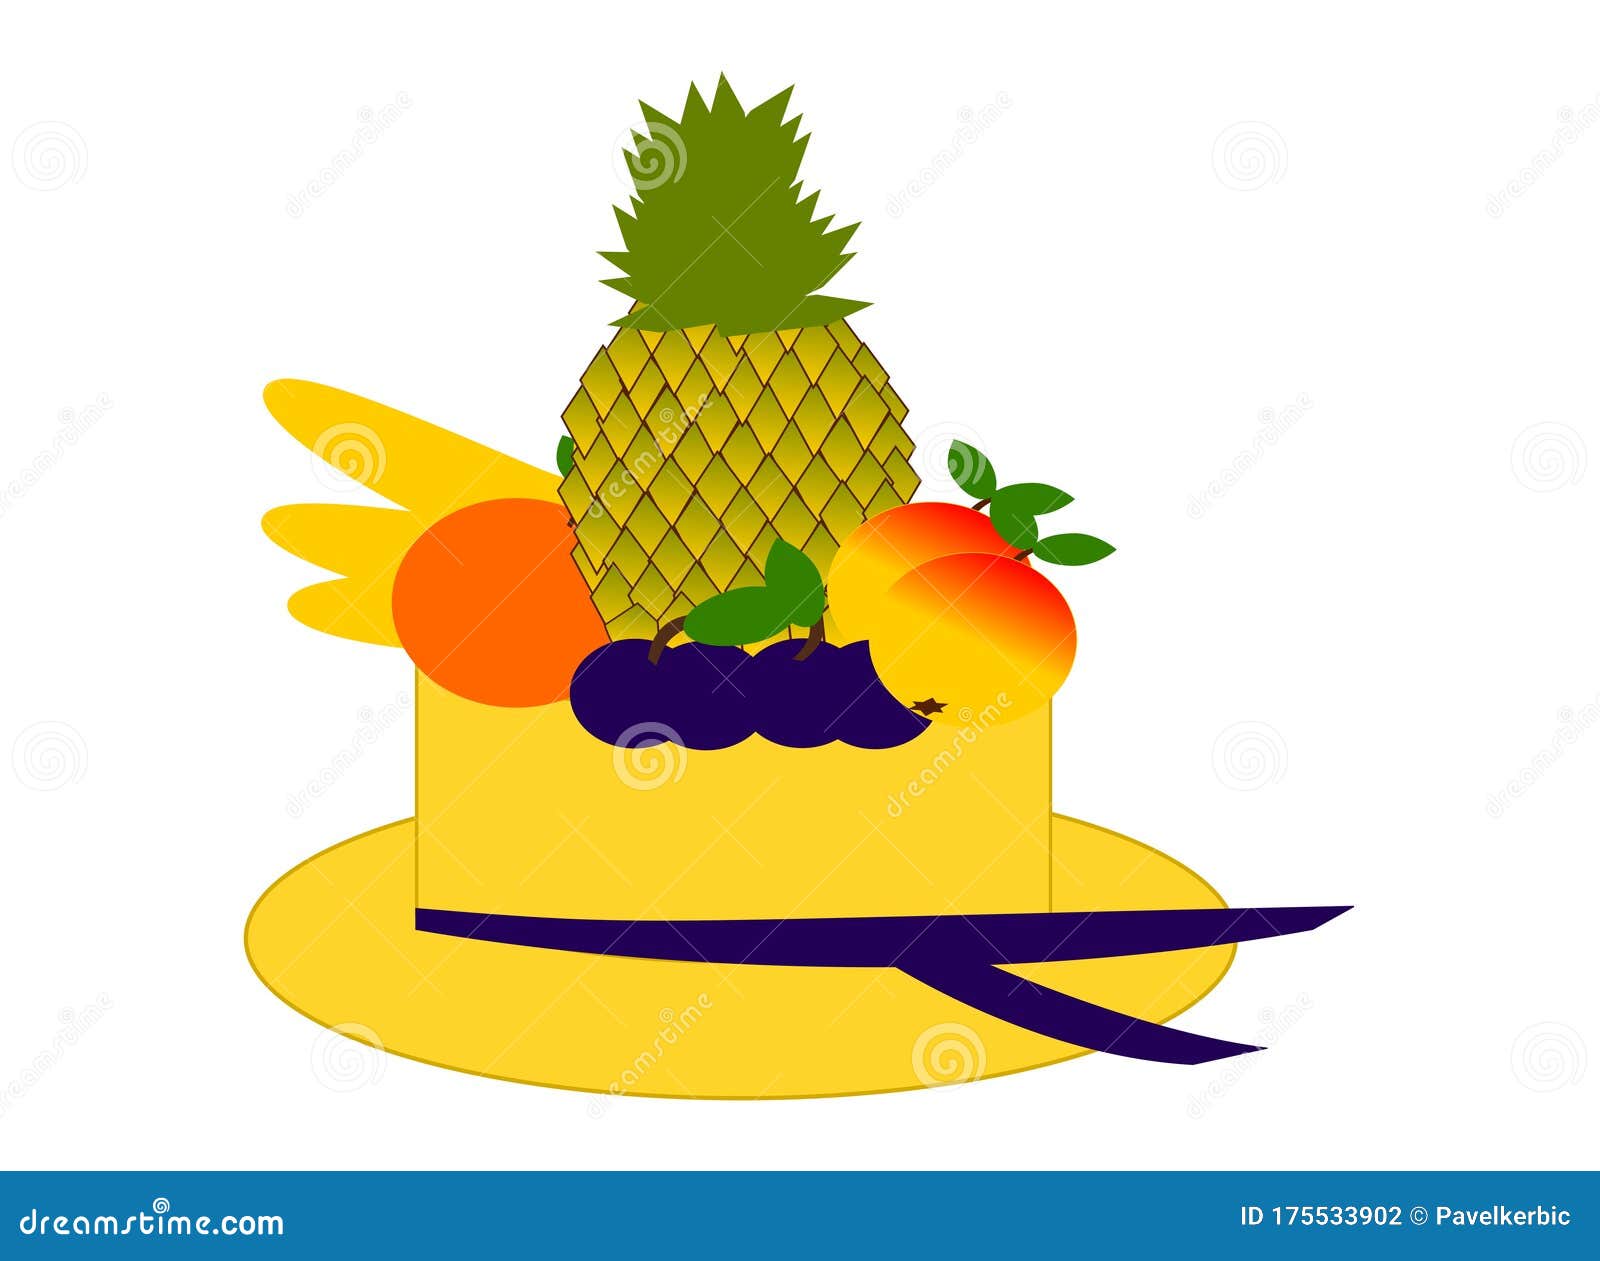 Sombrero De Verano Con Arte Digital De Frutas Stock ilustración - Ilustración de tropical, anaranjado: 175533902